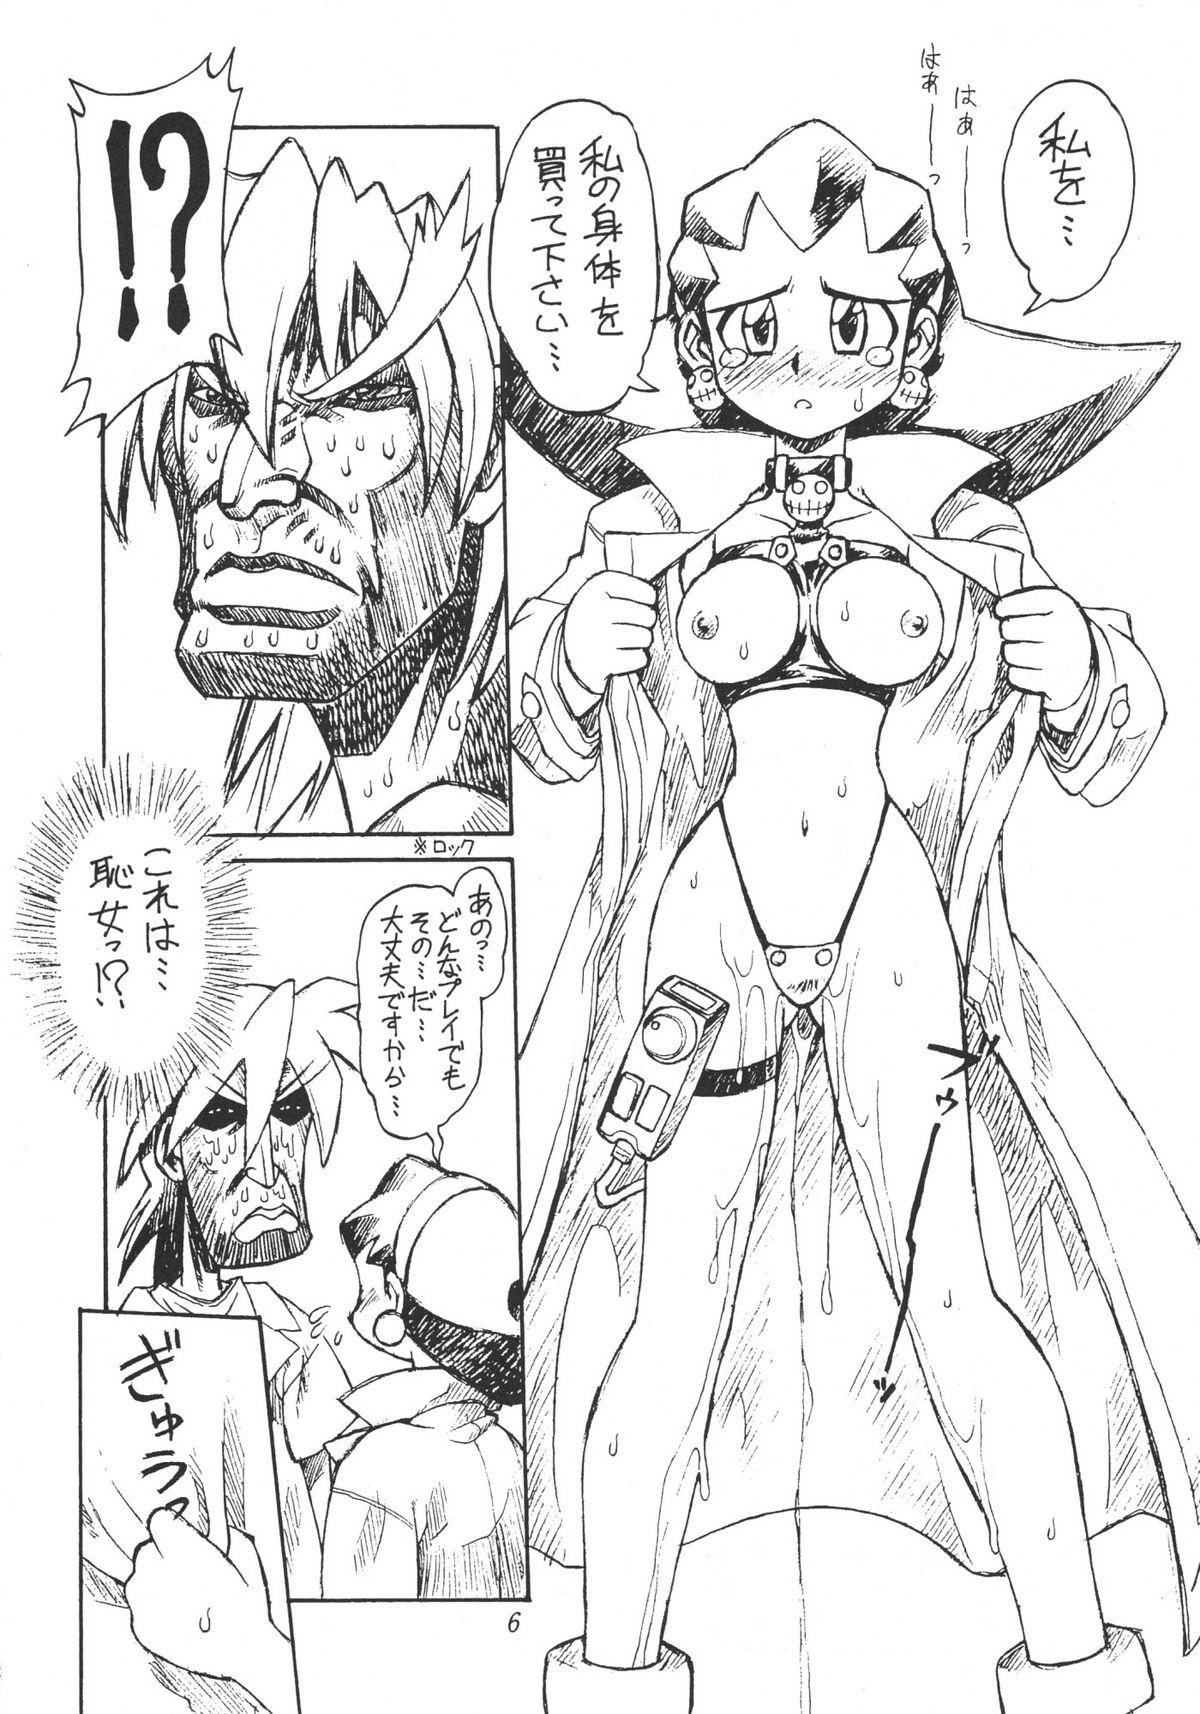 1080p URUWASHINO GOMORA SHOUJO - Mega man legends Sperm - Page 7